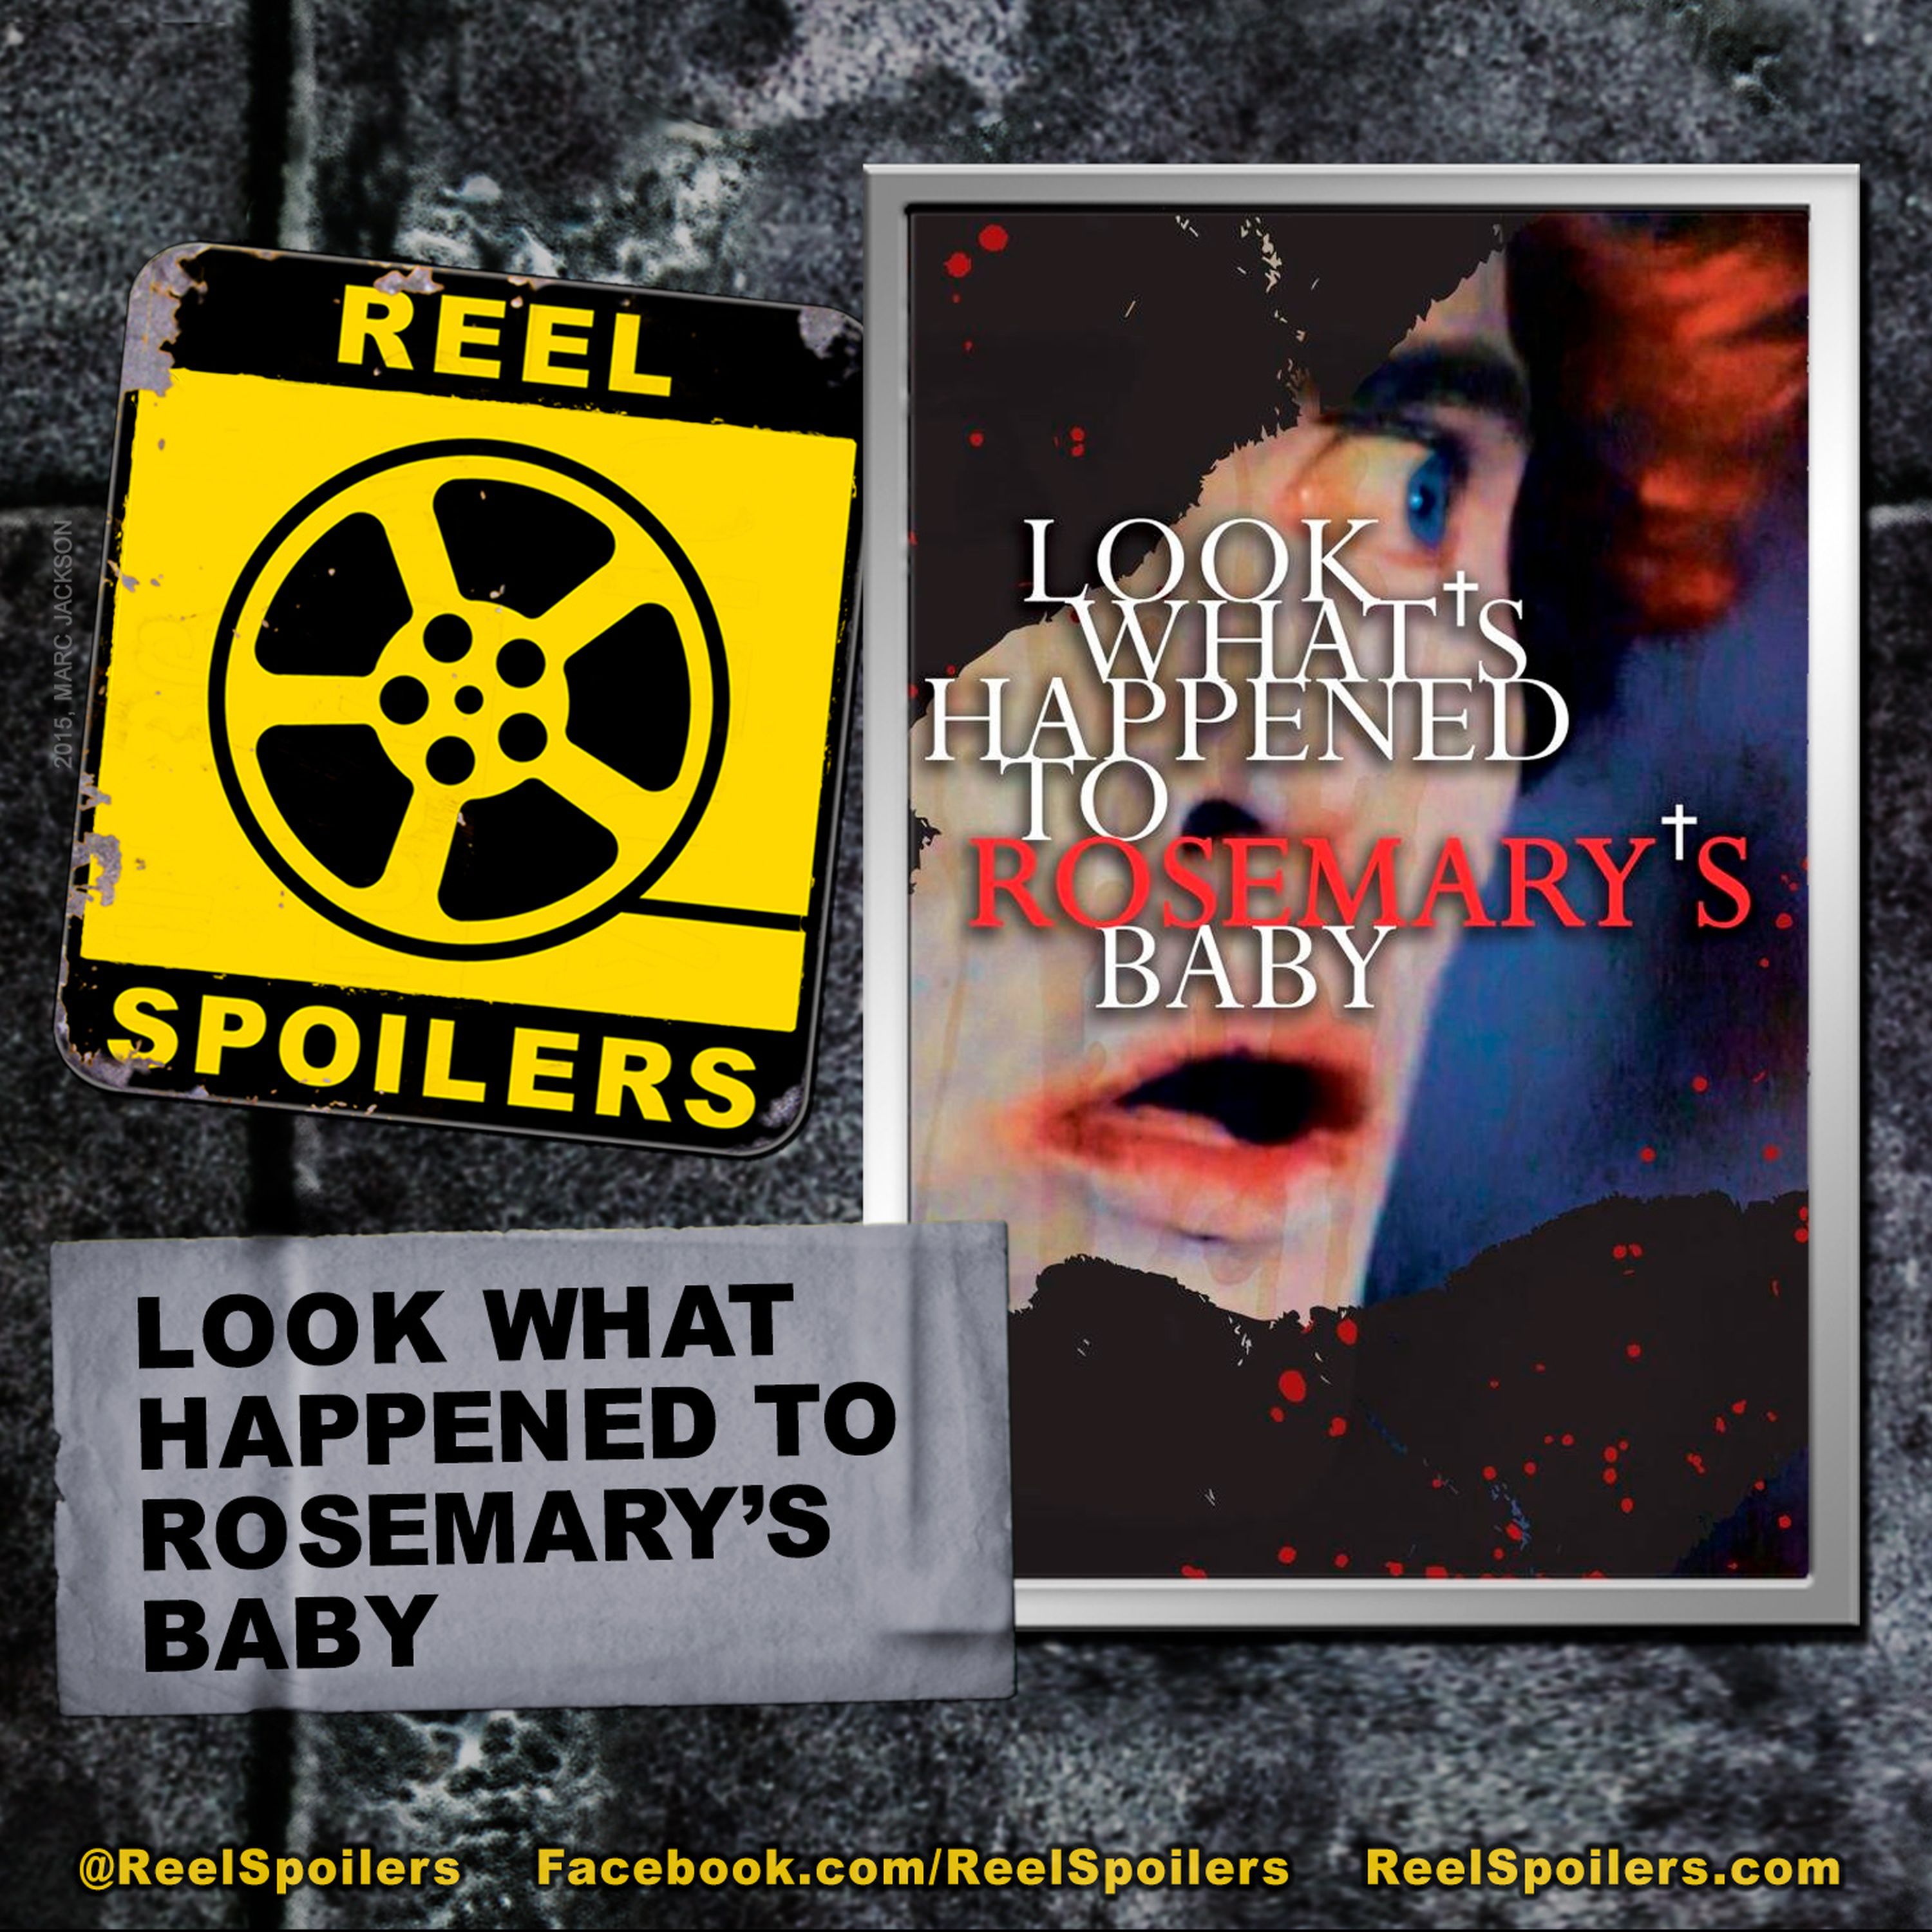 LOOK WHAT'S HAPPENED TO ROSEMARY'S BABY Starring Patty Duke, Stephen McHattie, Ruth Gordon Image